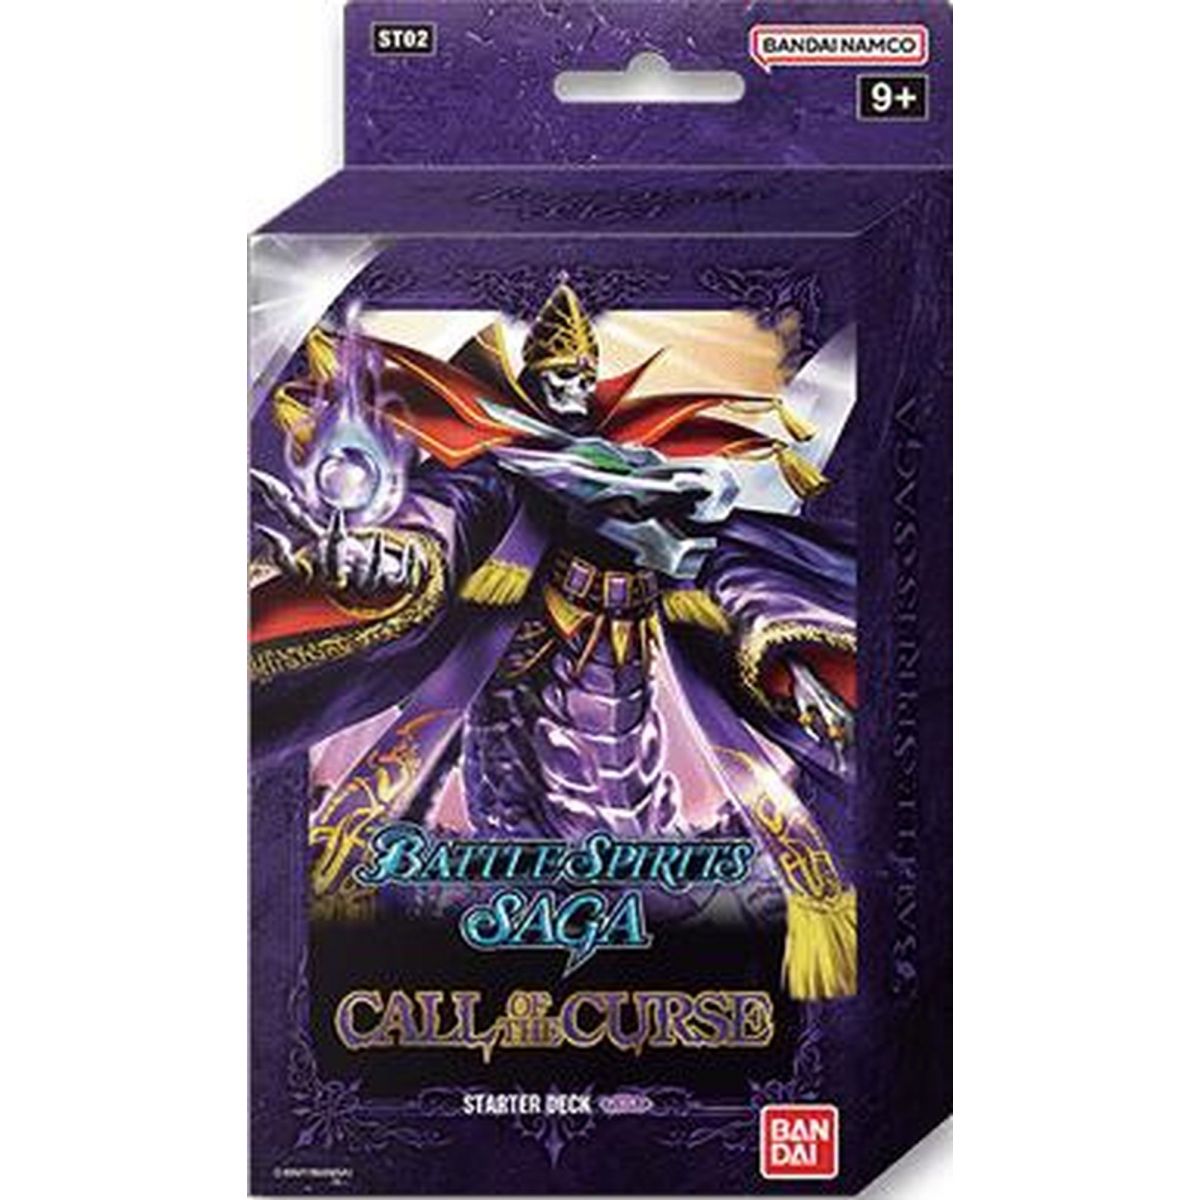 Battle Spirits Saga - Starter Deck - Purple - ST02 Call of the Curse - EN